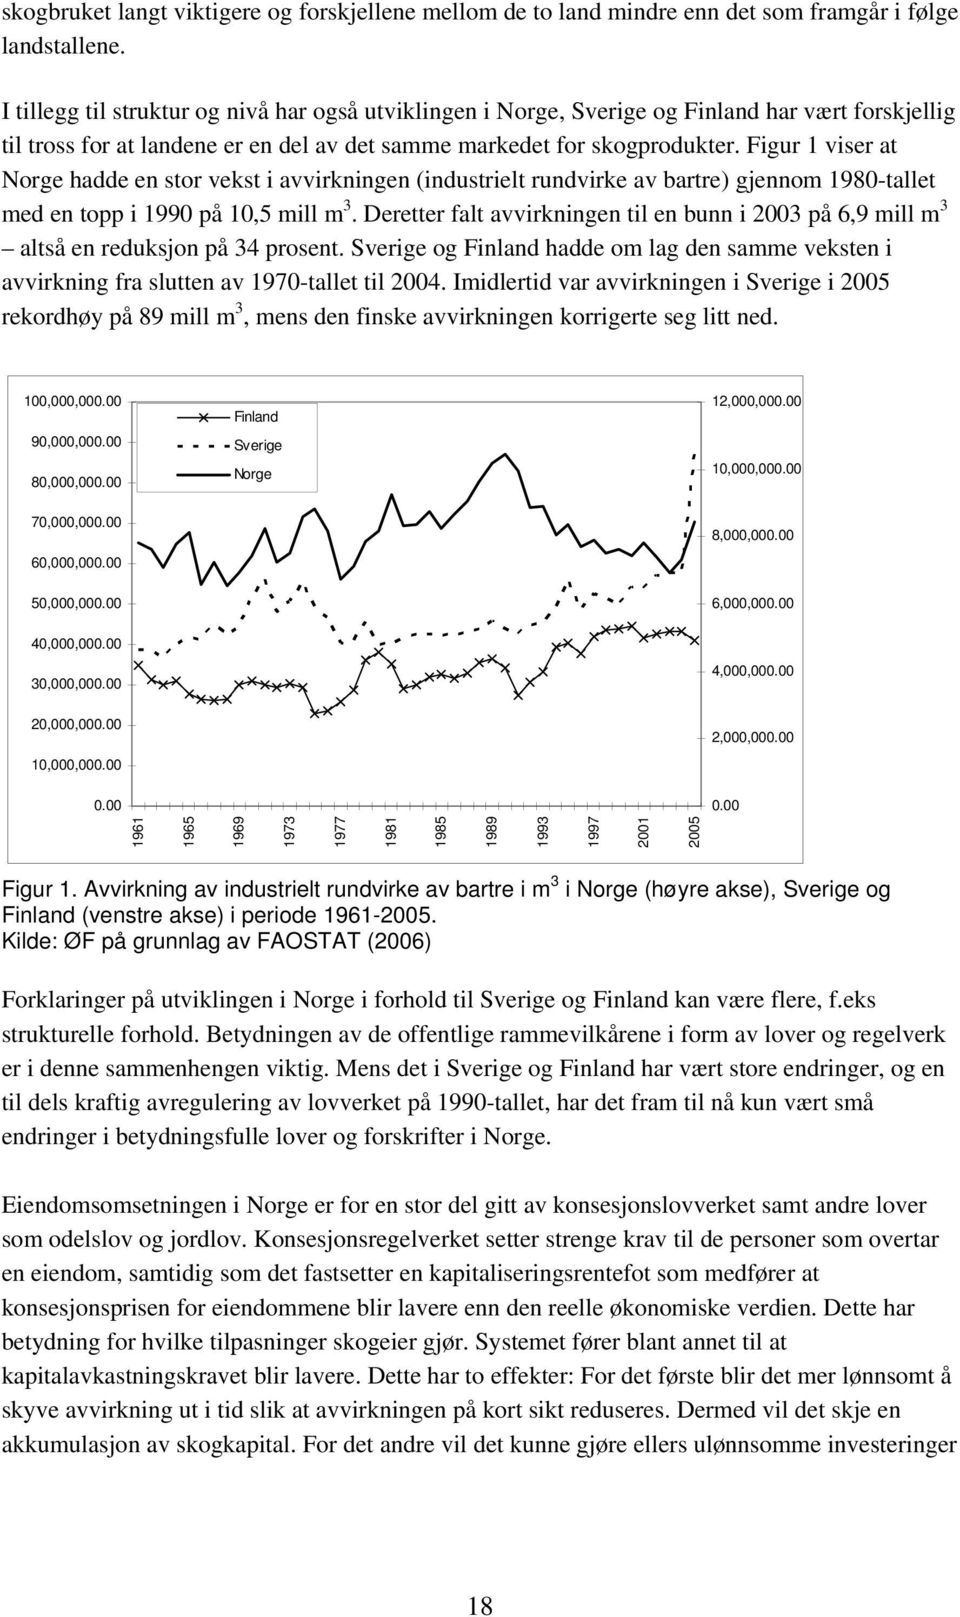 Figur 1 viser at Norge hadde en stor vekst i avvirkningen (industrielt rundvirke av bartre) gjennom 1980-tallet med en topp i 1990 på 10,5 mill m 3.